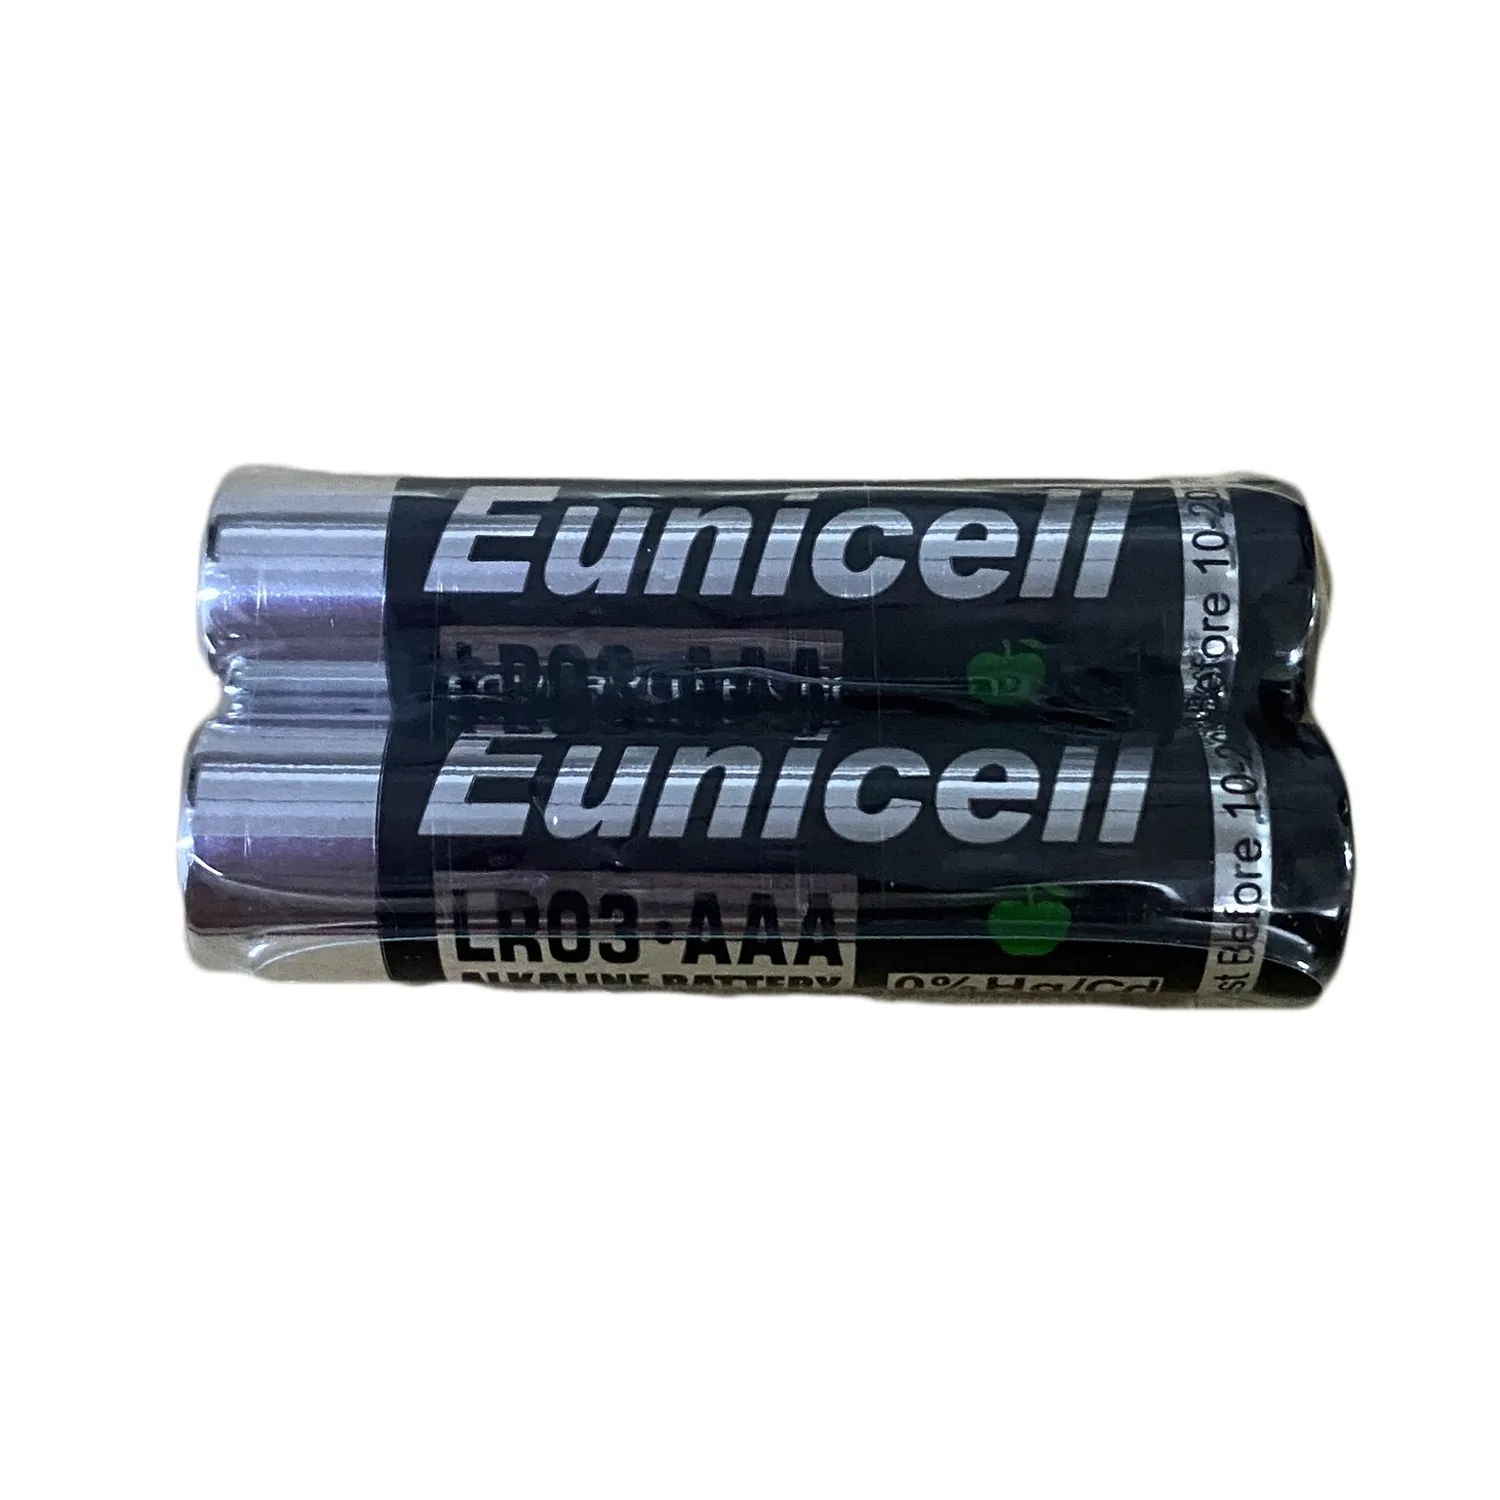 売れ筋aaaサイズ1.5vアルカリ電池aaa/lr03/am4 no.7乾電池